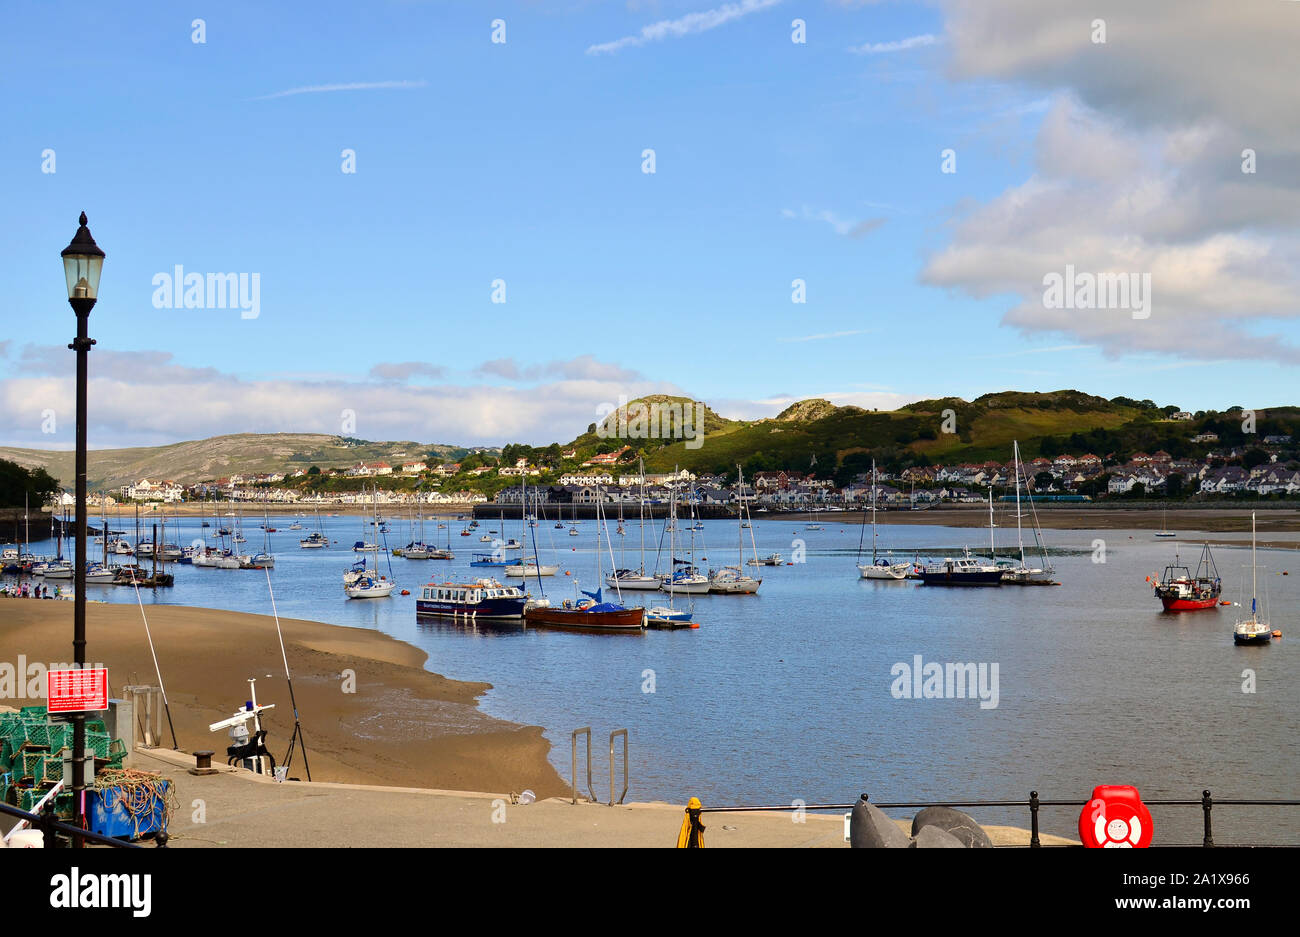 Der Blick auf eine Bucht mit einer Menge Boote auf dem Fluss Conwy während der Ebbe. Conwy, Wales / Großbritannien Stockfoto